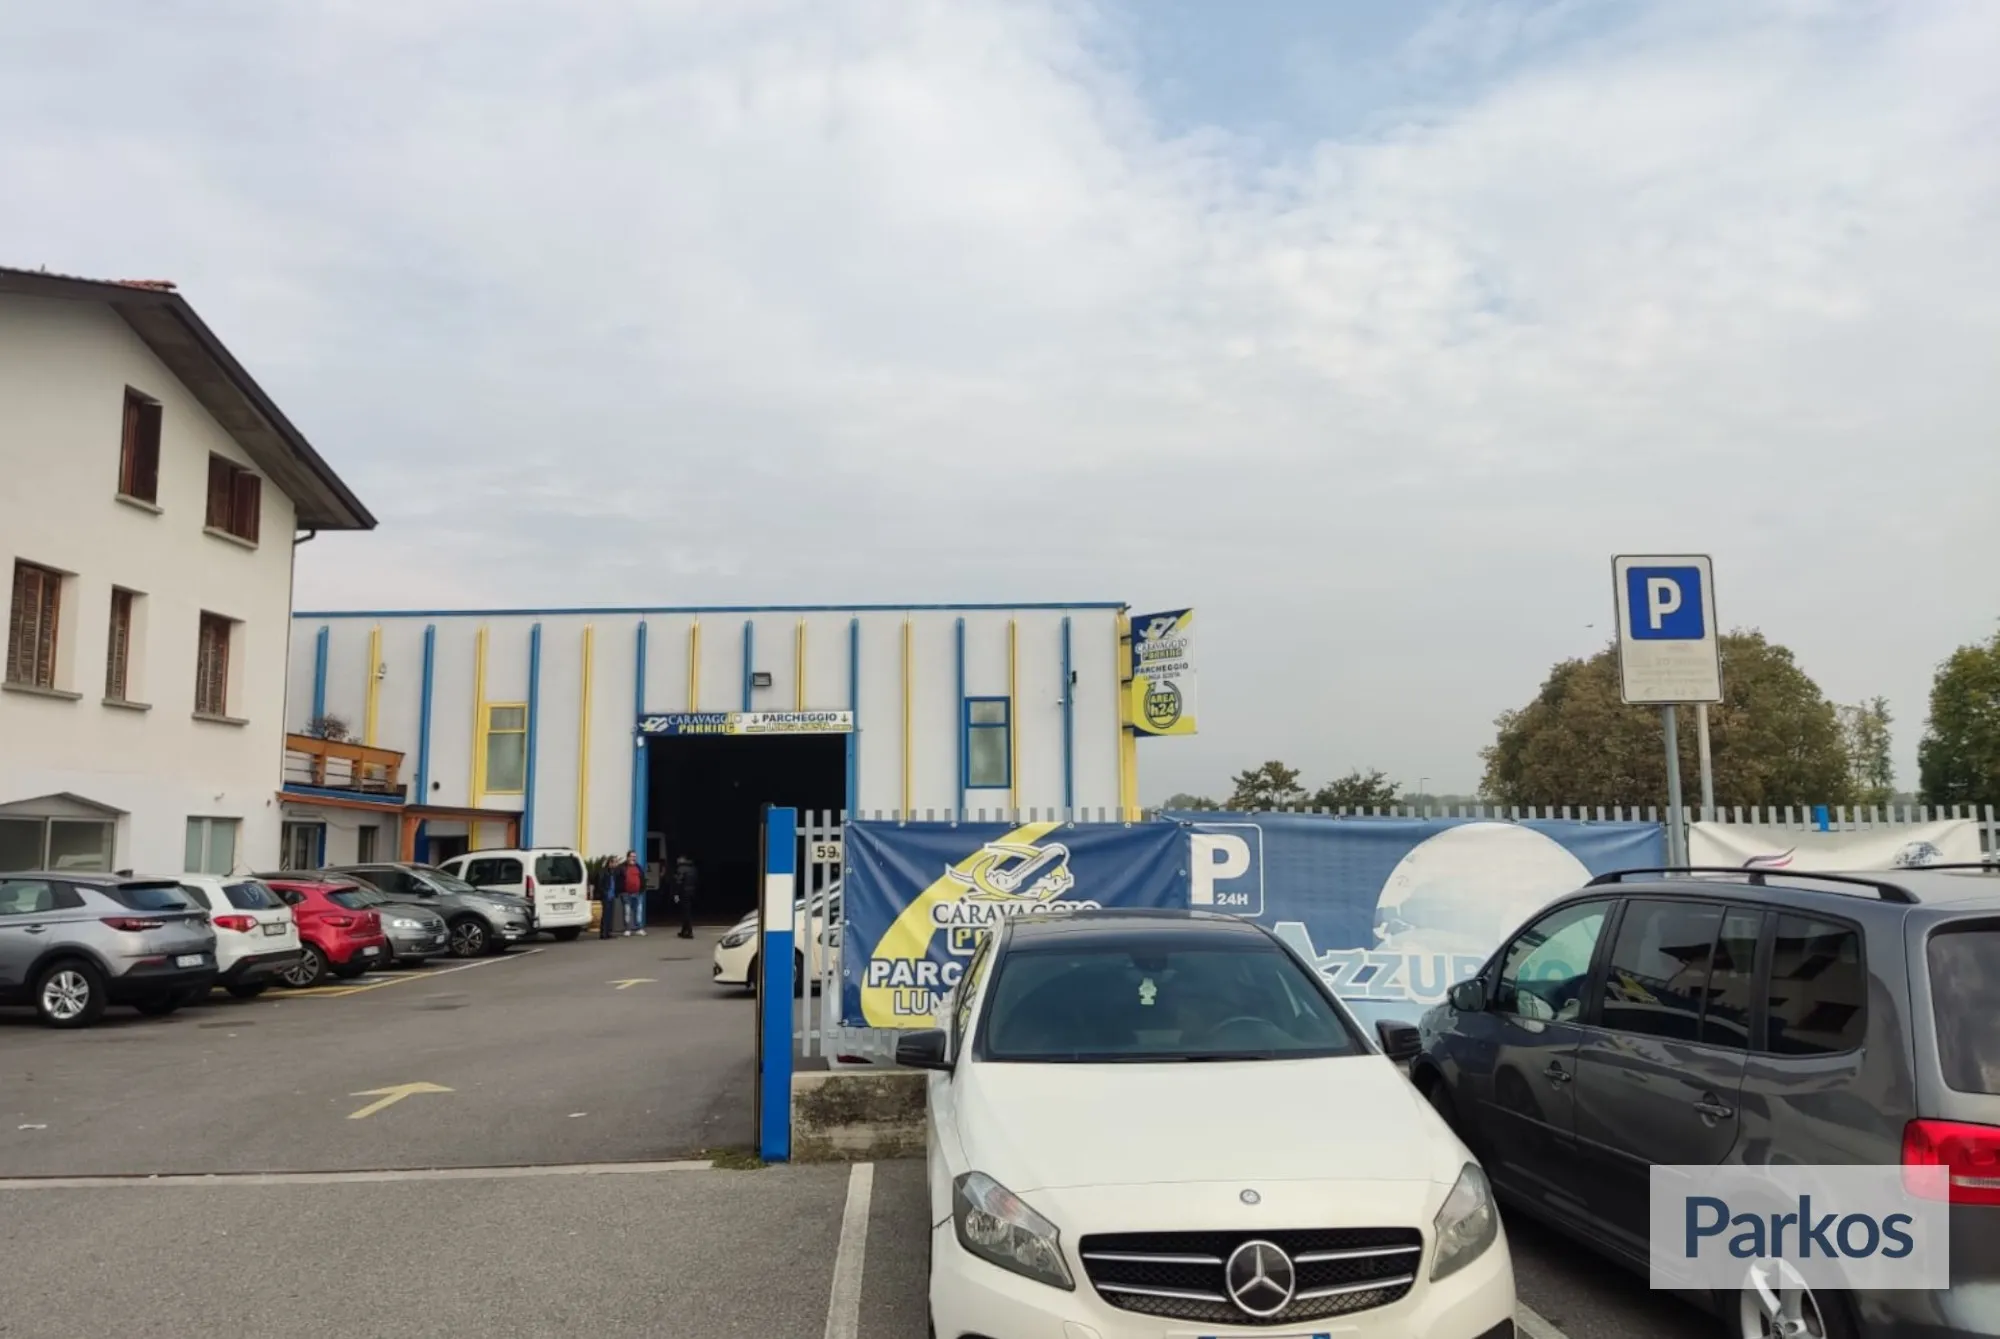 Azzurro Caravaggio Parking (Paga in parcheggio) - Bergamo Orio al Serio Parking - picture 1